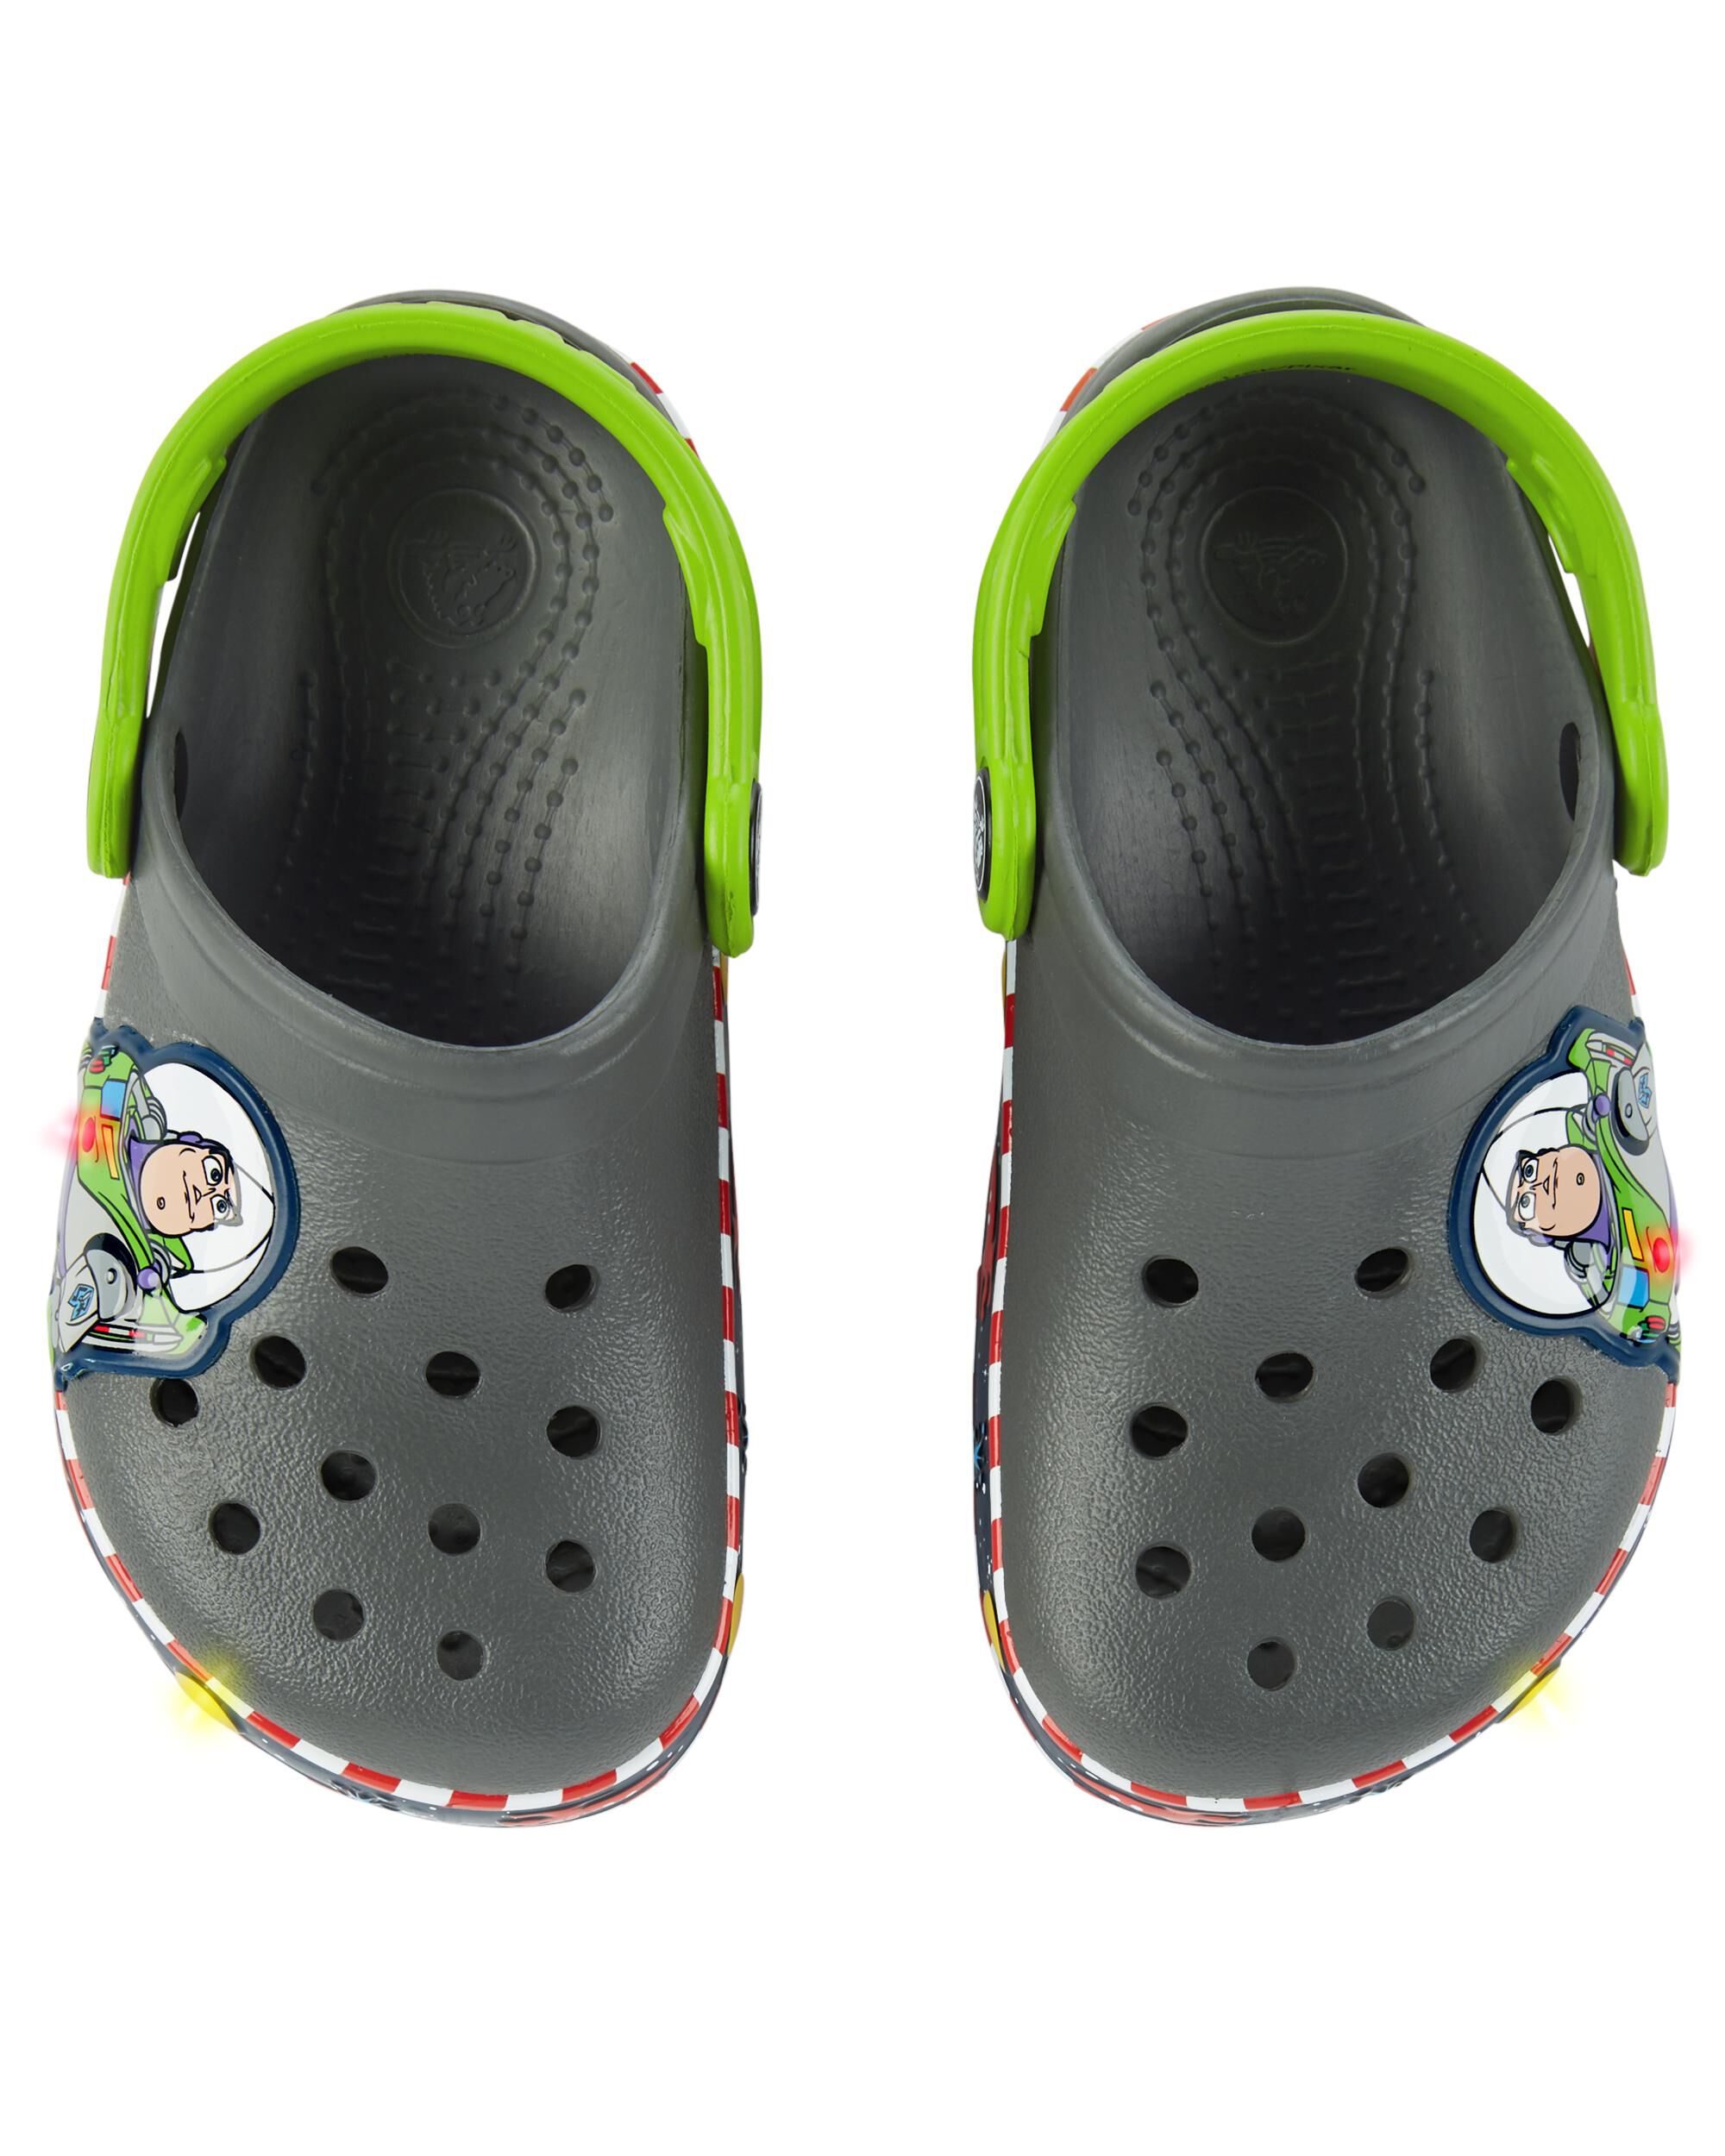 buzz lightyear crocs